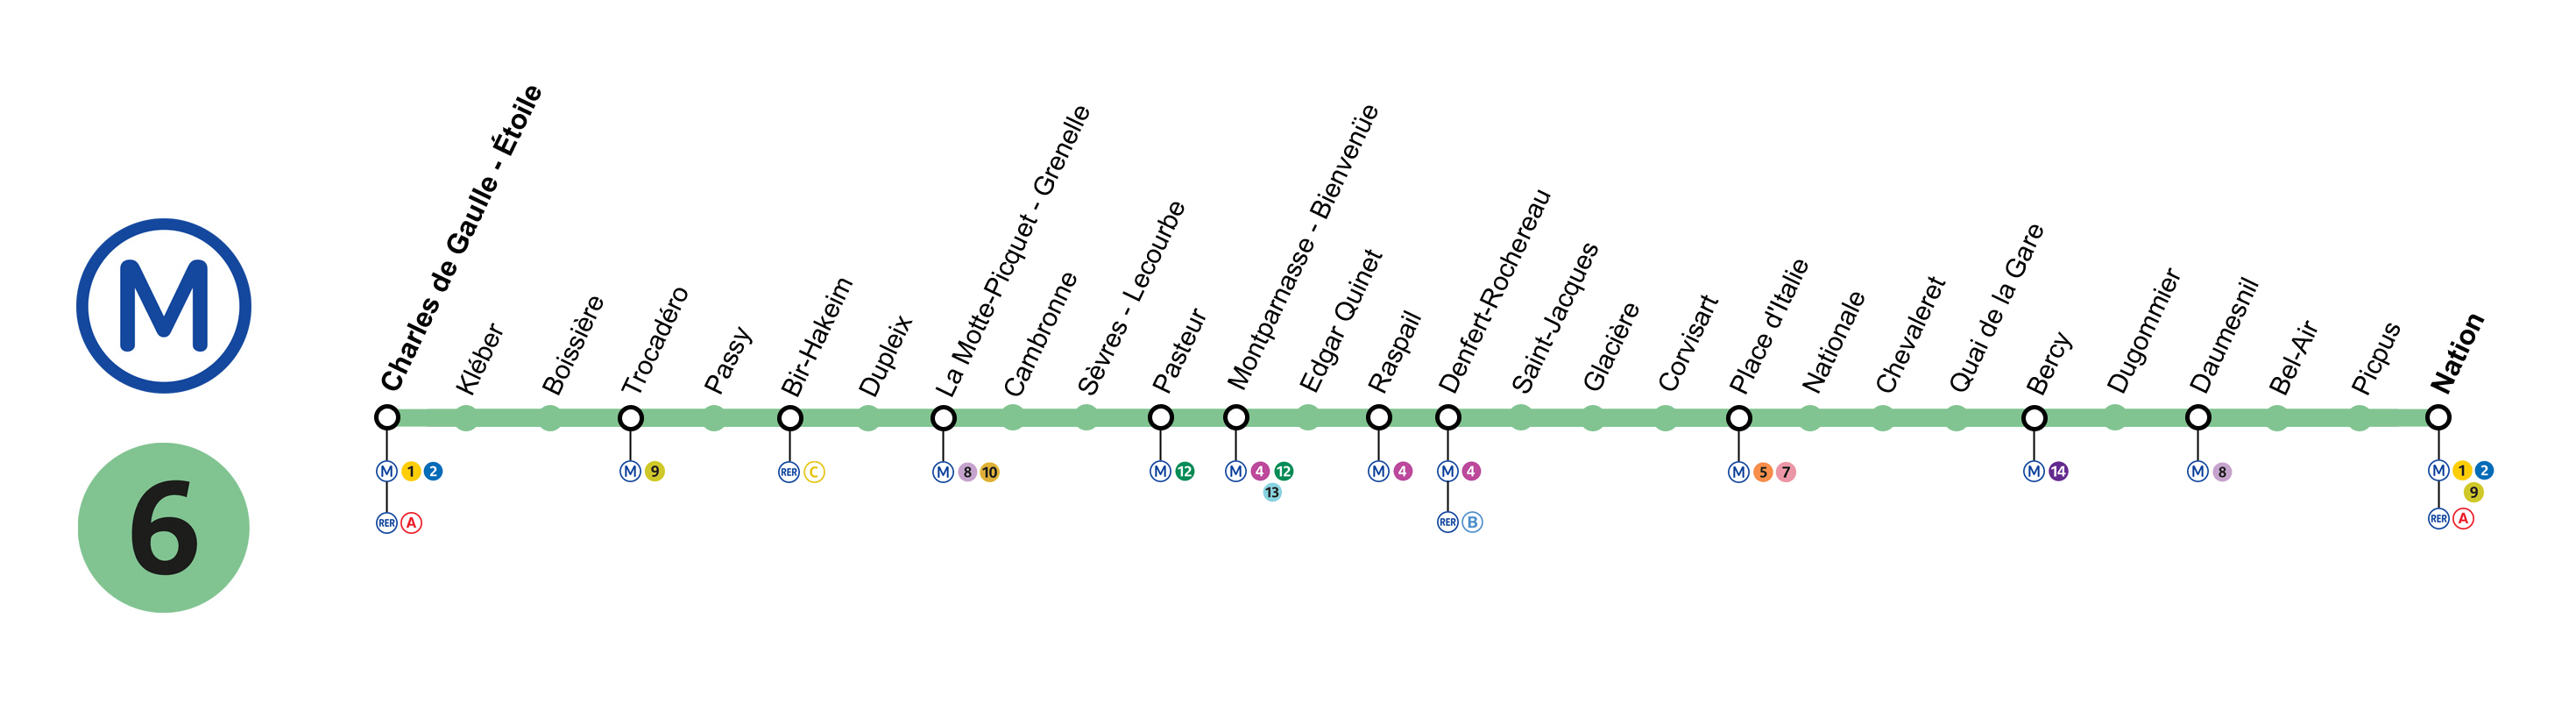 linea metro paris 6